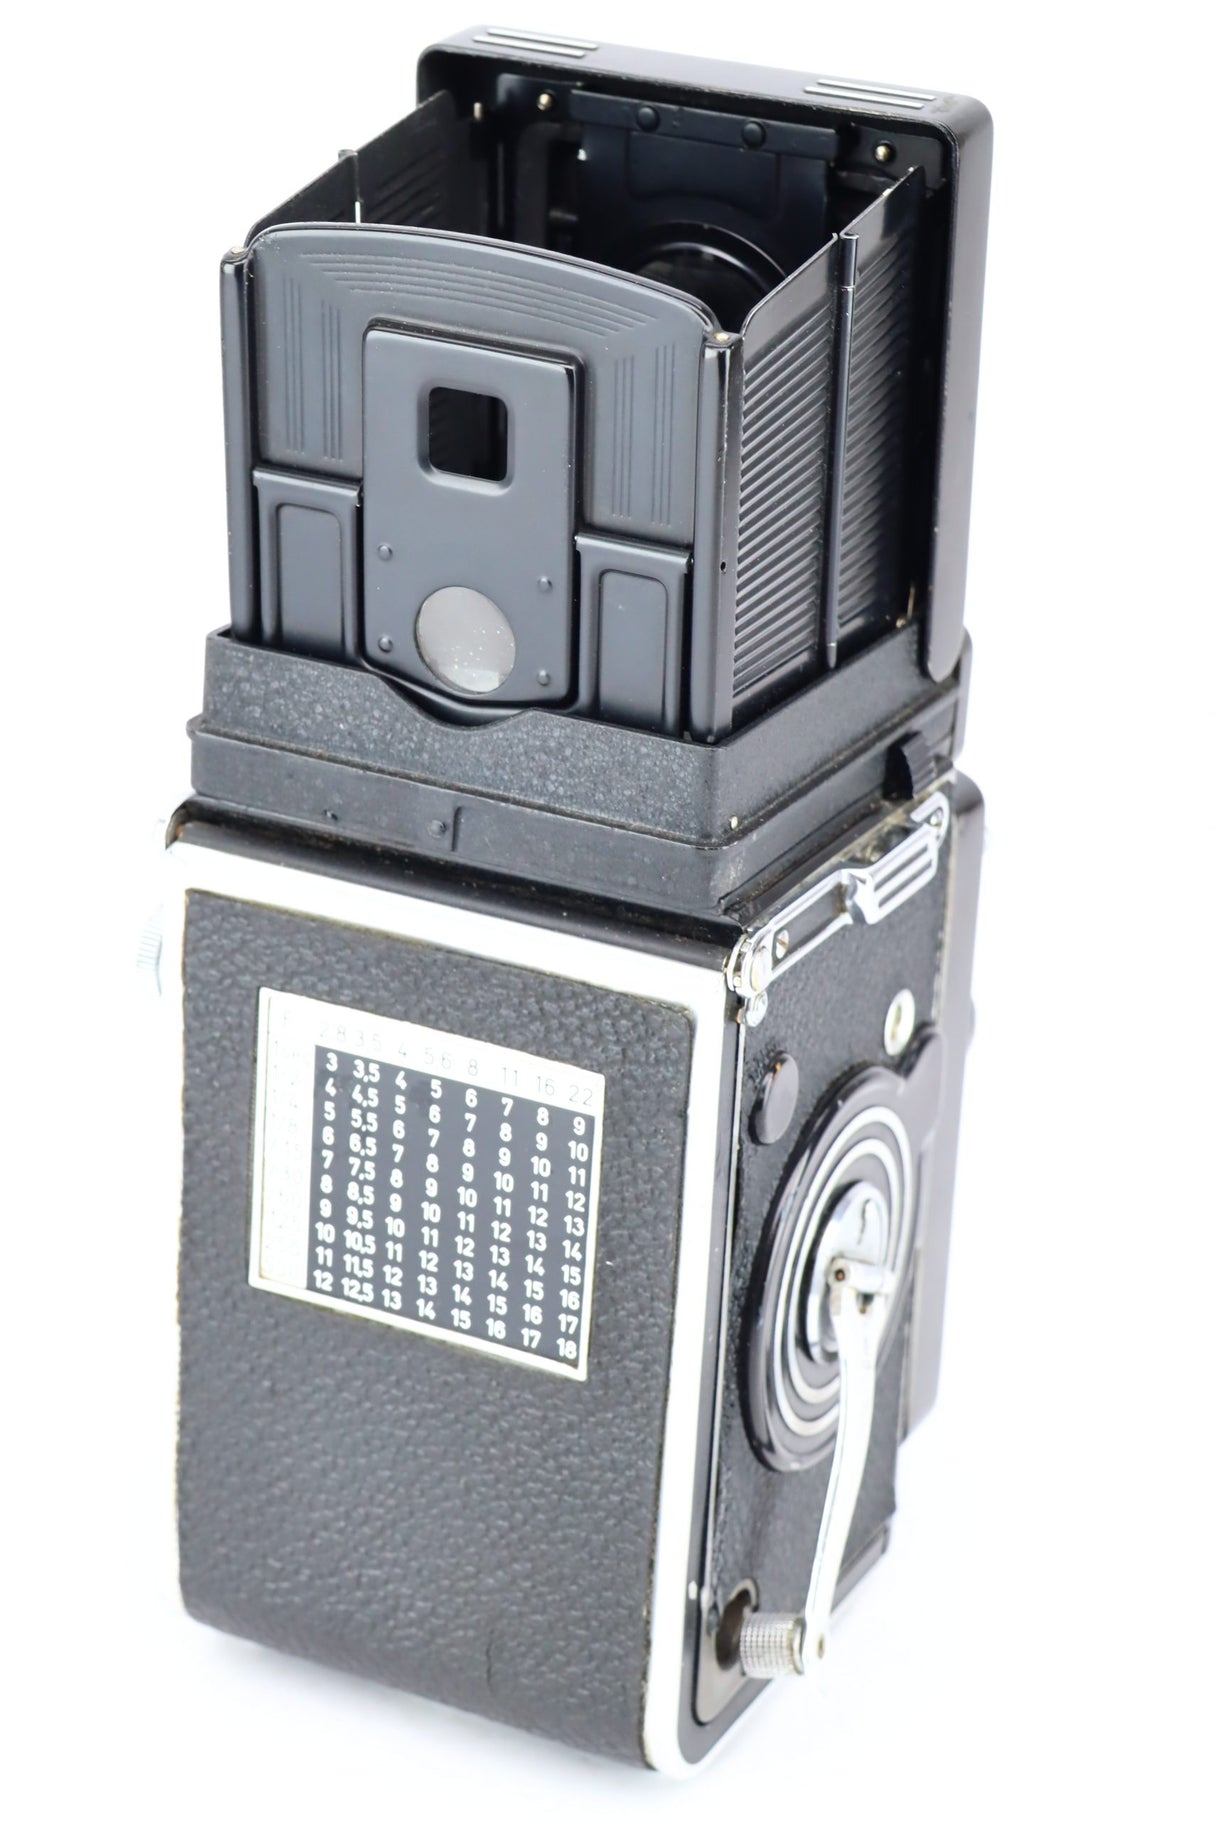 Rolleiflex 75mm 3,5 Carl Zeiss